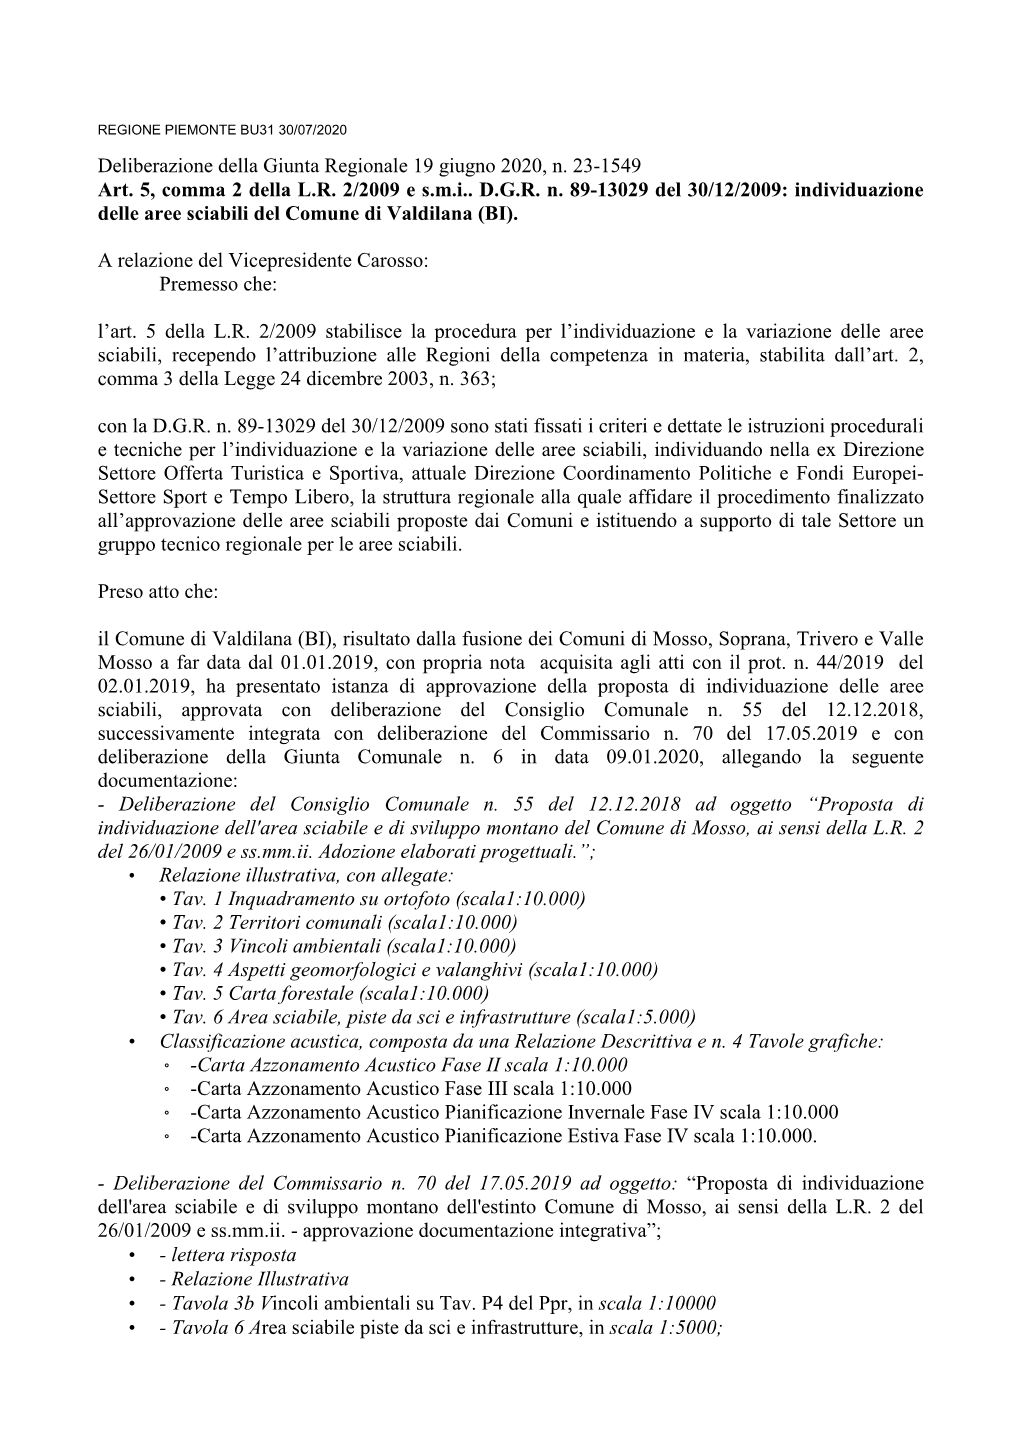 Deliberazione Della Giunta Regionale 19 Giugno 2020, N. 23-1549 Art. 5, Comma 2 Della L.R